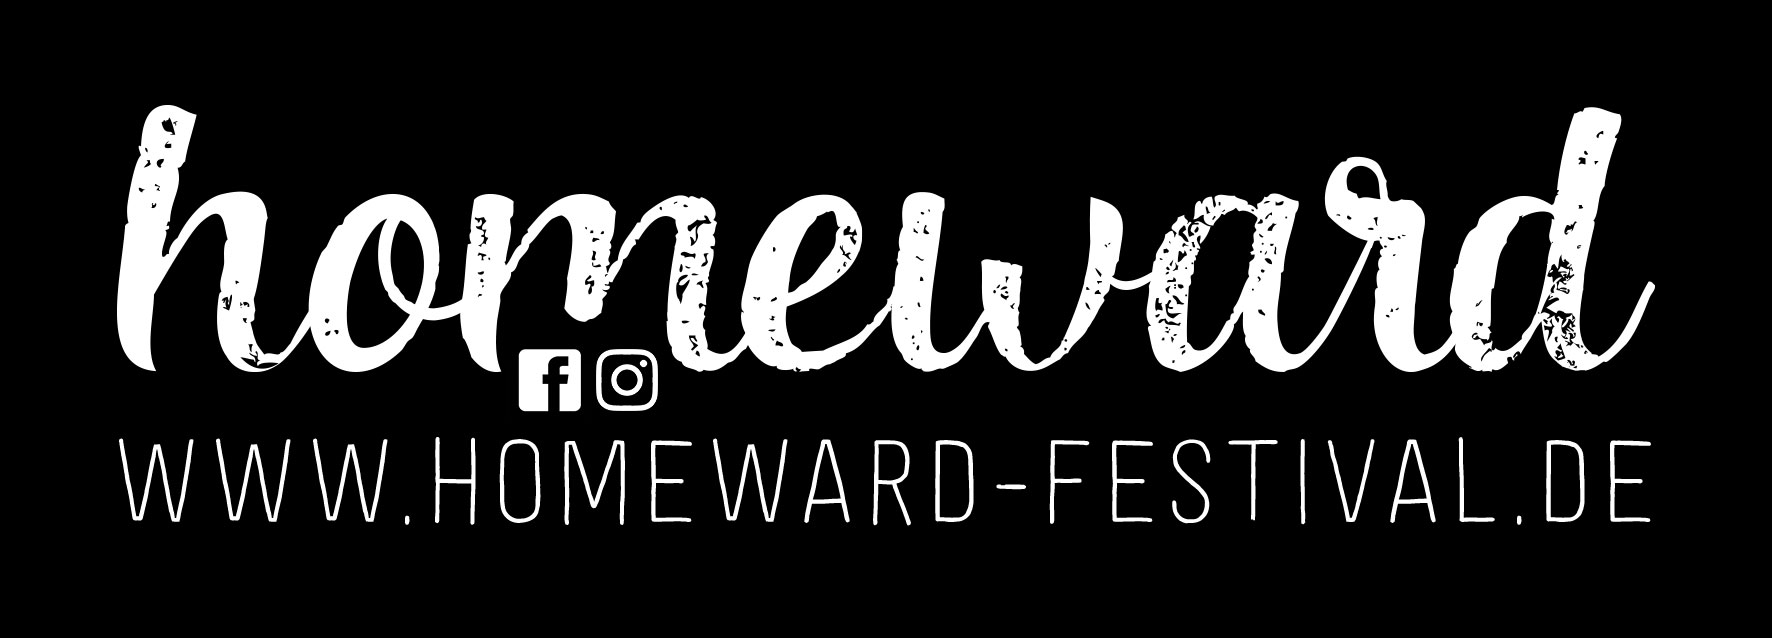 Homeward Festival